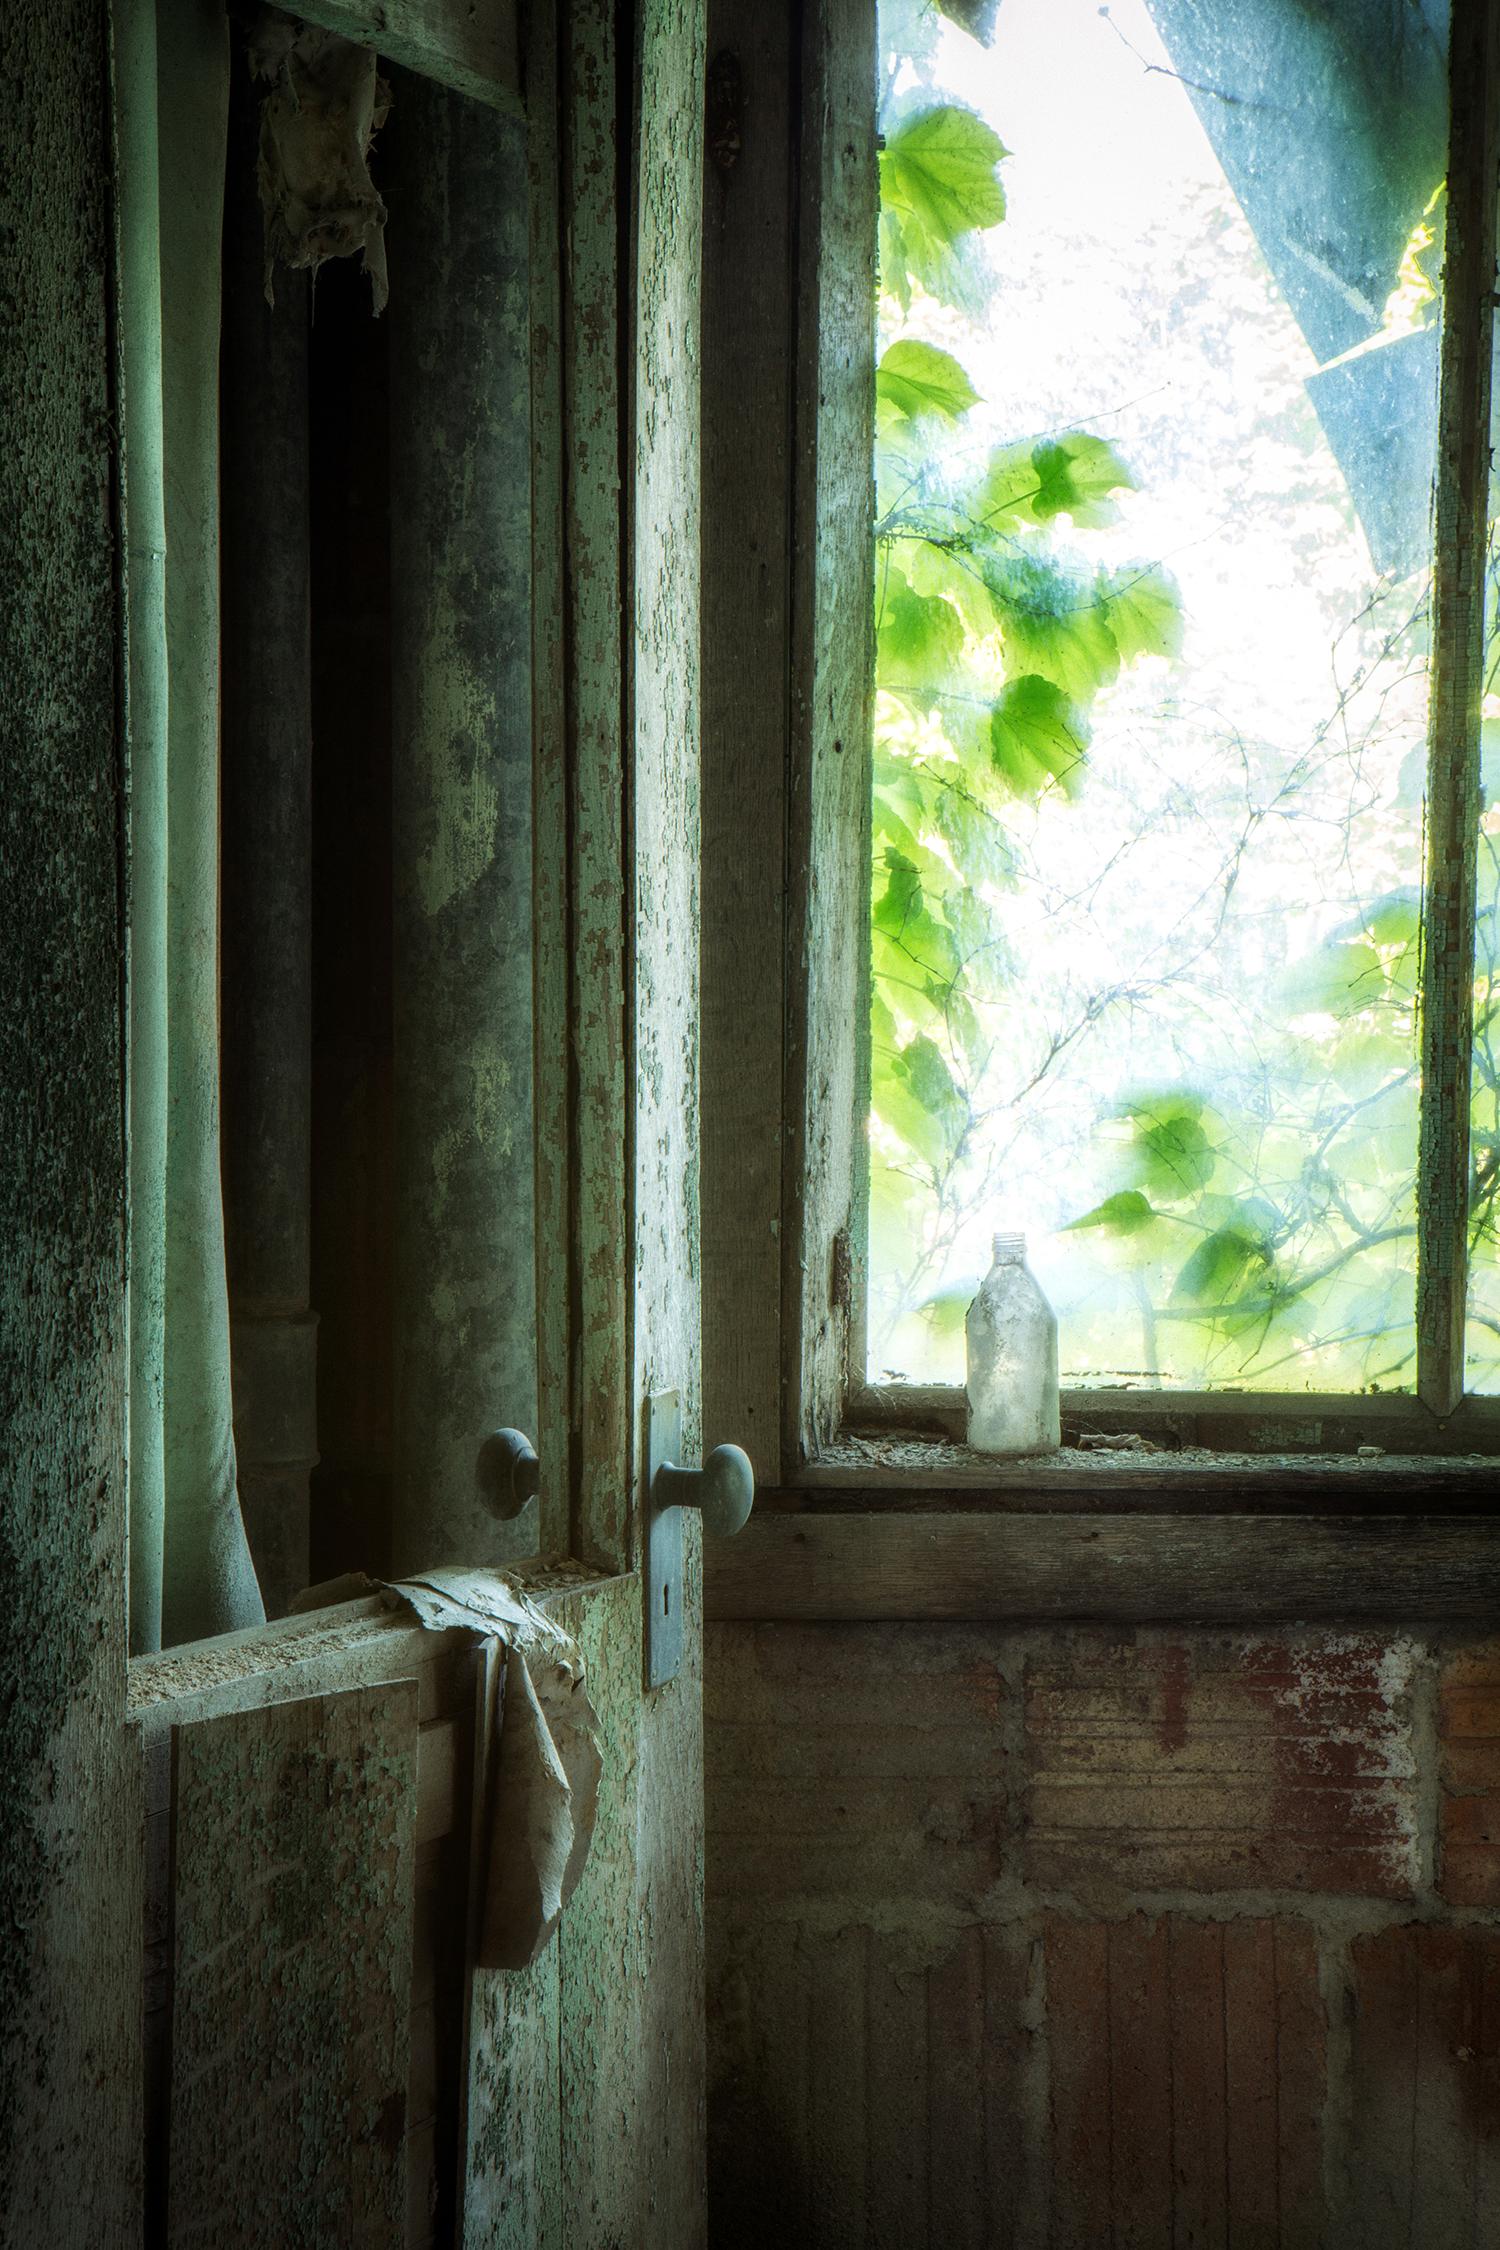 "Überreste", zeitgenössisch, verlassen, Fenster, Tür, blau, grün, Farbfotografie